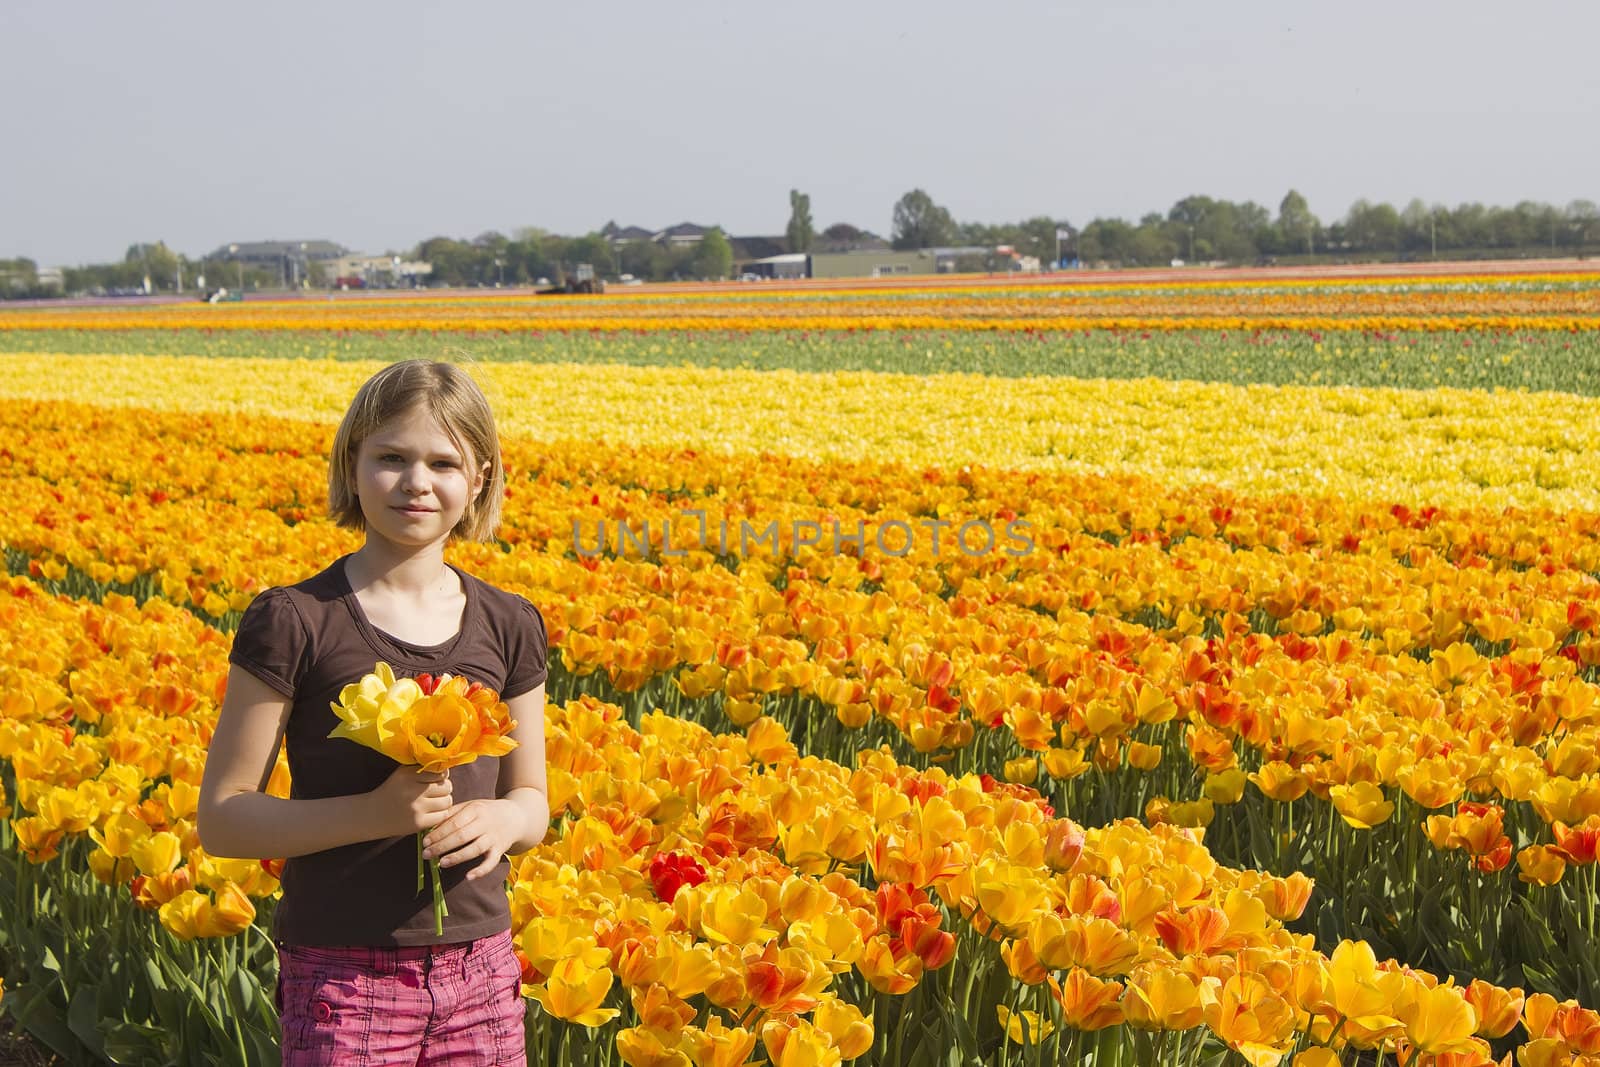 little girl in tulips field  by miradrozdowski